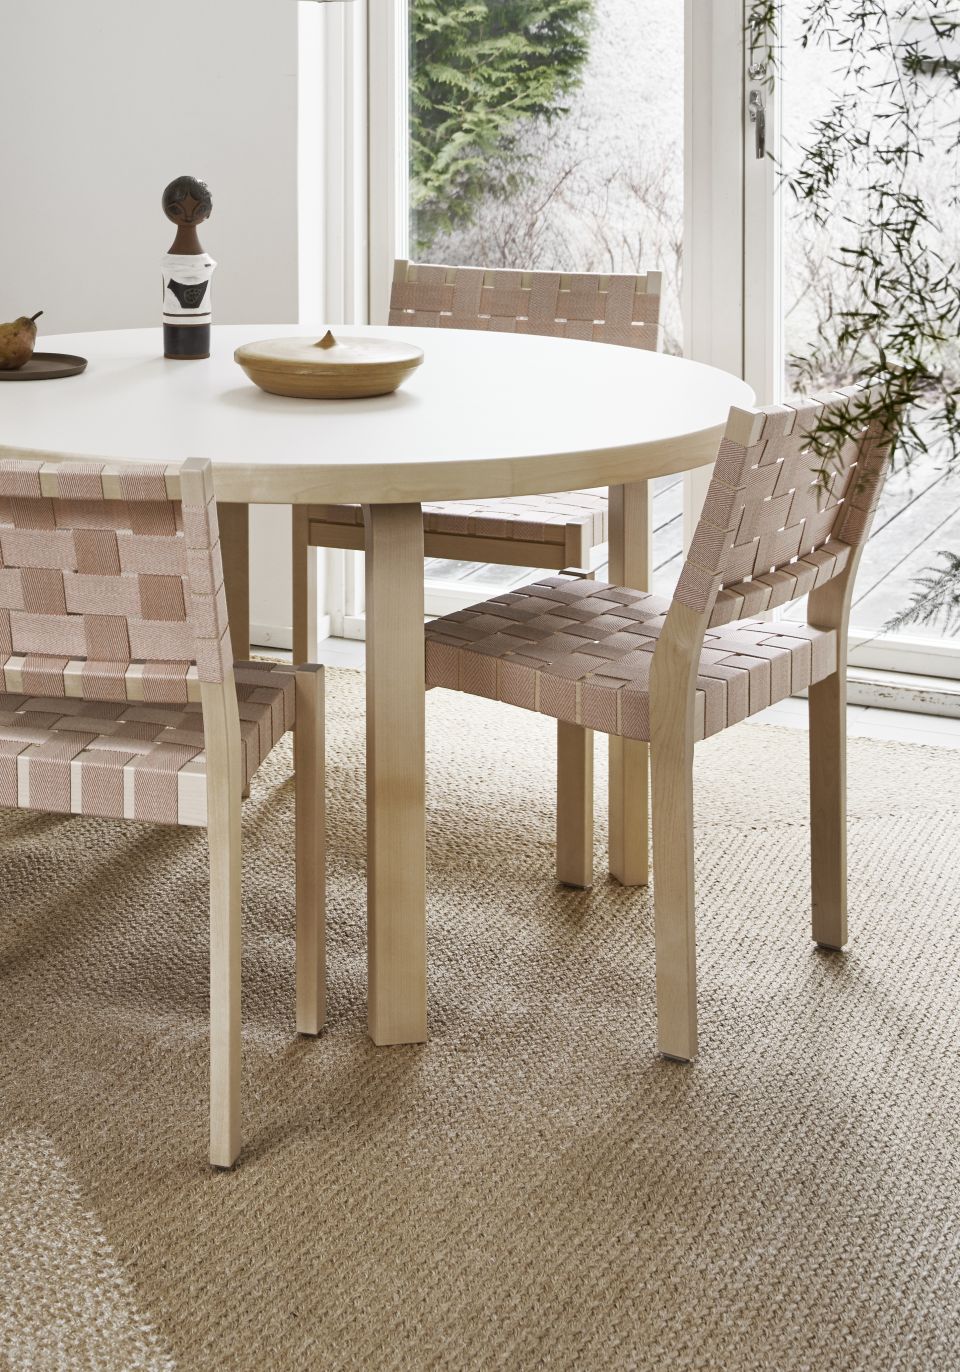 Chair_611_Aalto_table_91_Riikka_Kantinkoski-2599280